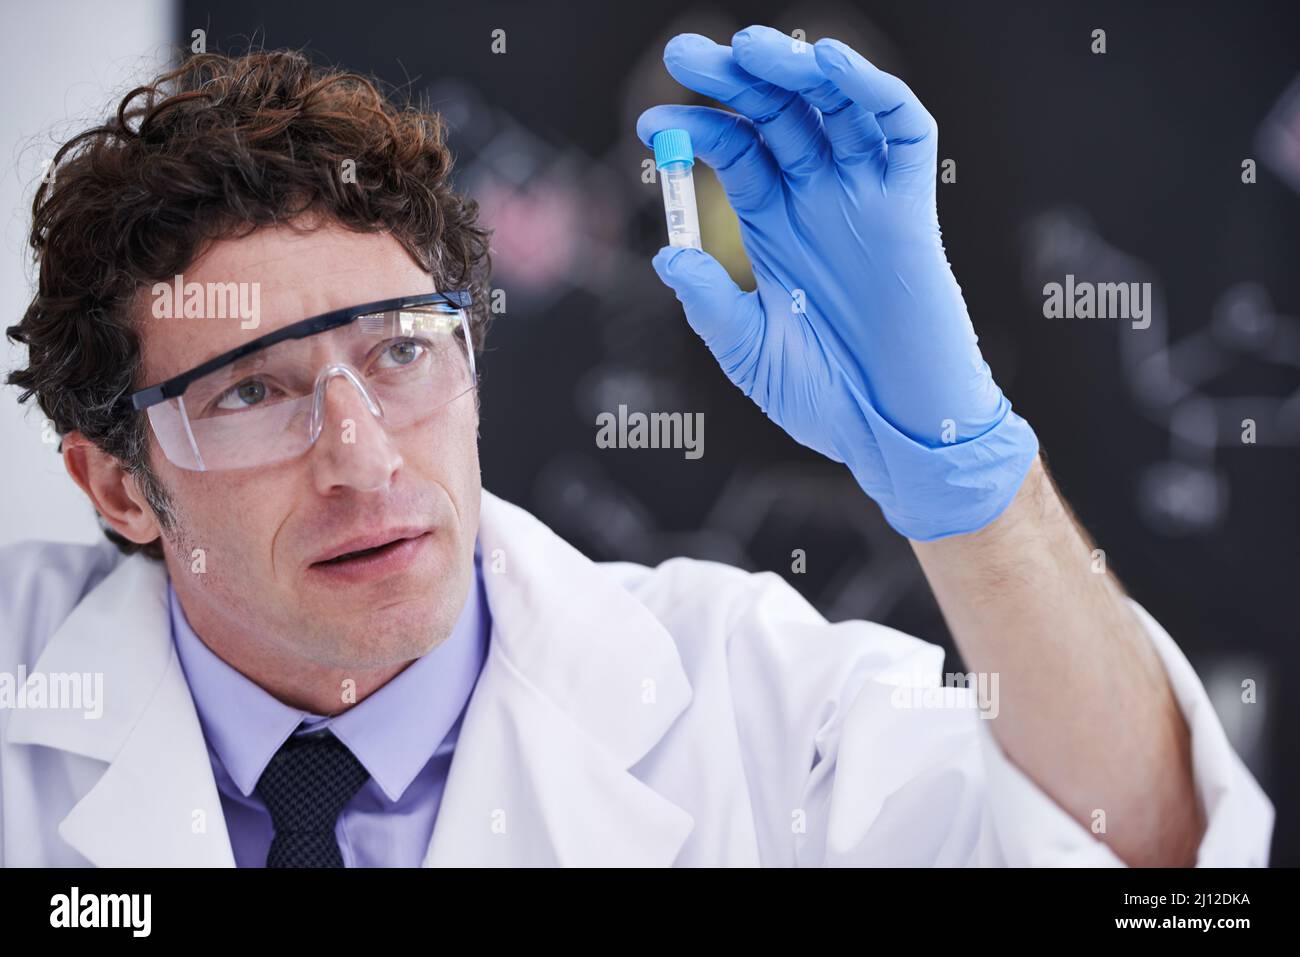 Die Zukunft der medizinischen Wissenschaft liegt in seinen Händen. Ein Wissenschaftler, der eine Probe in einem Reagenzglas betrachtet. Stockfoto